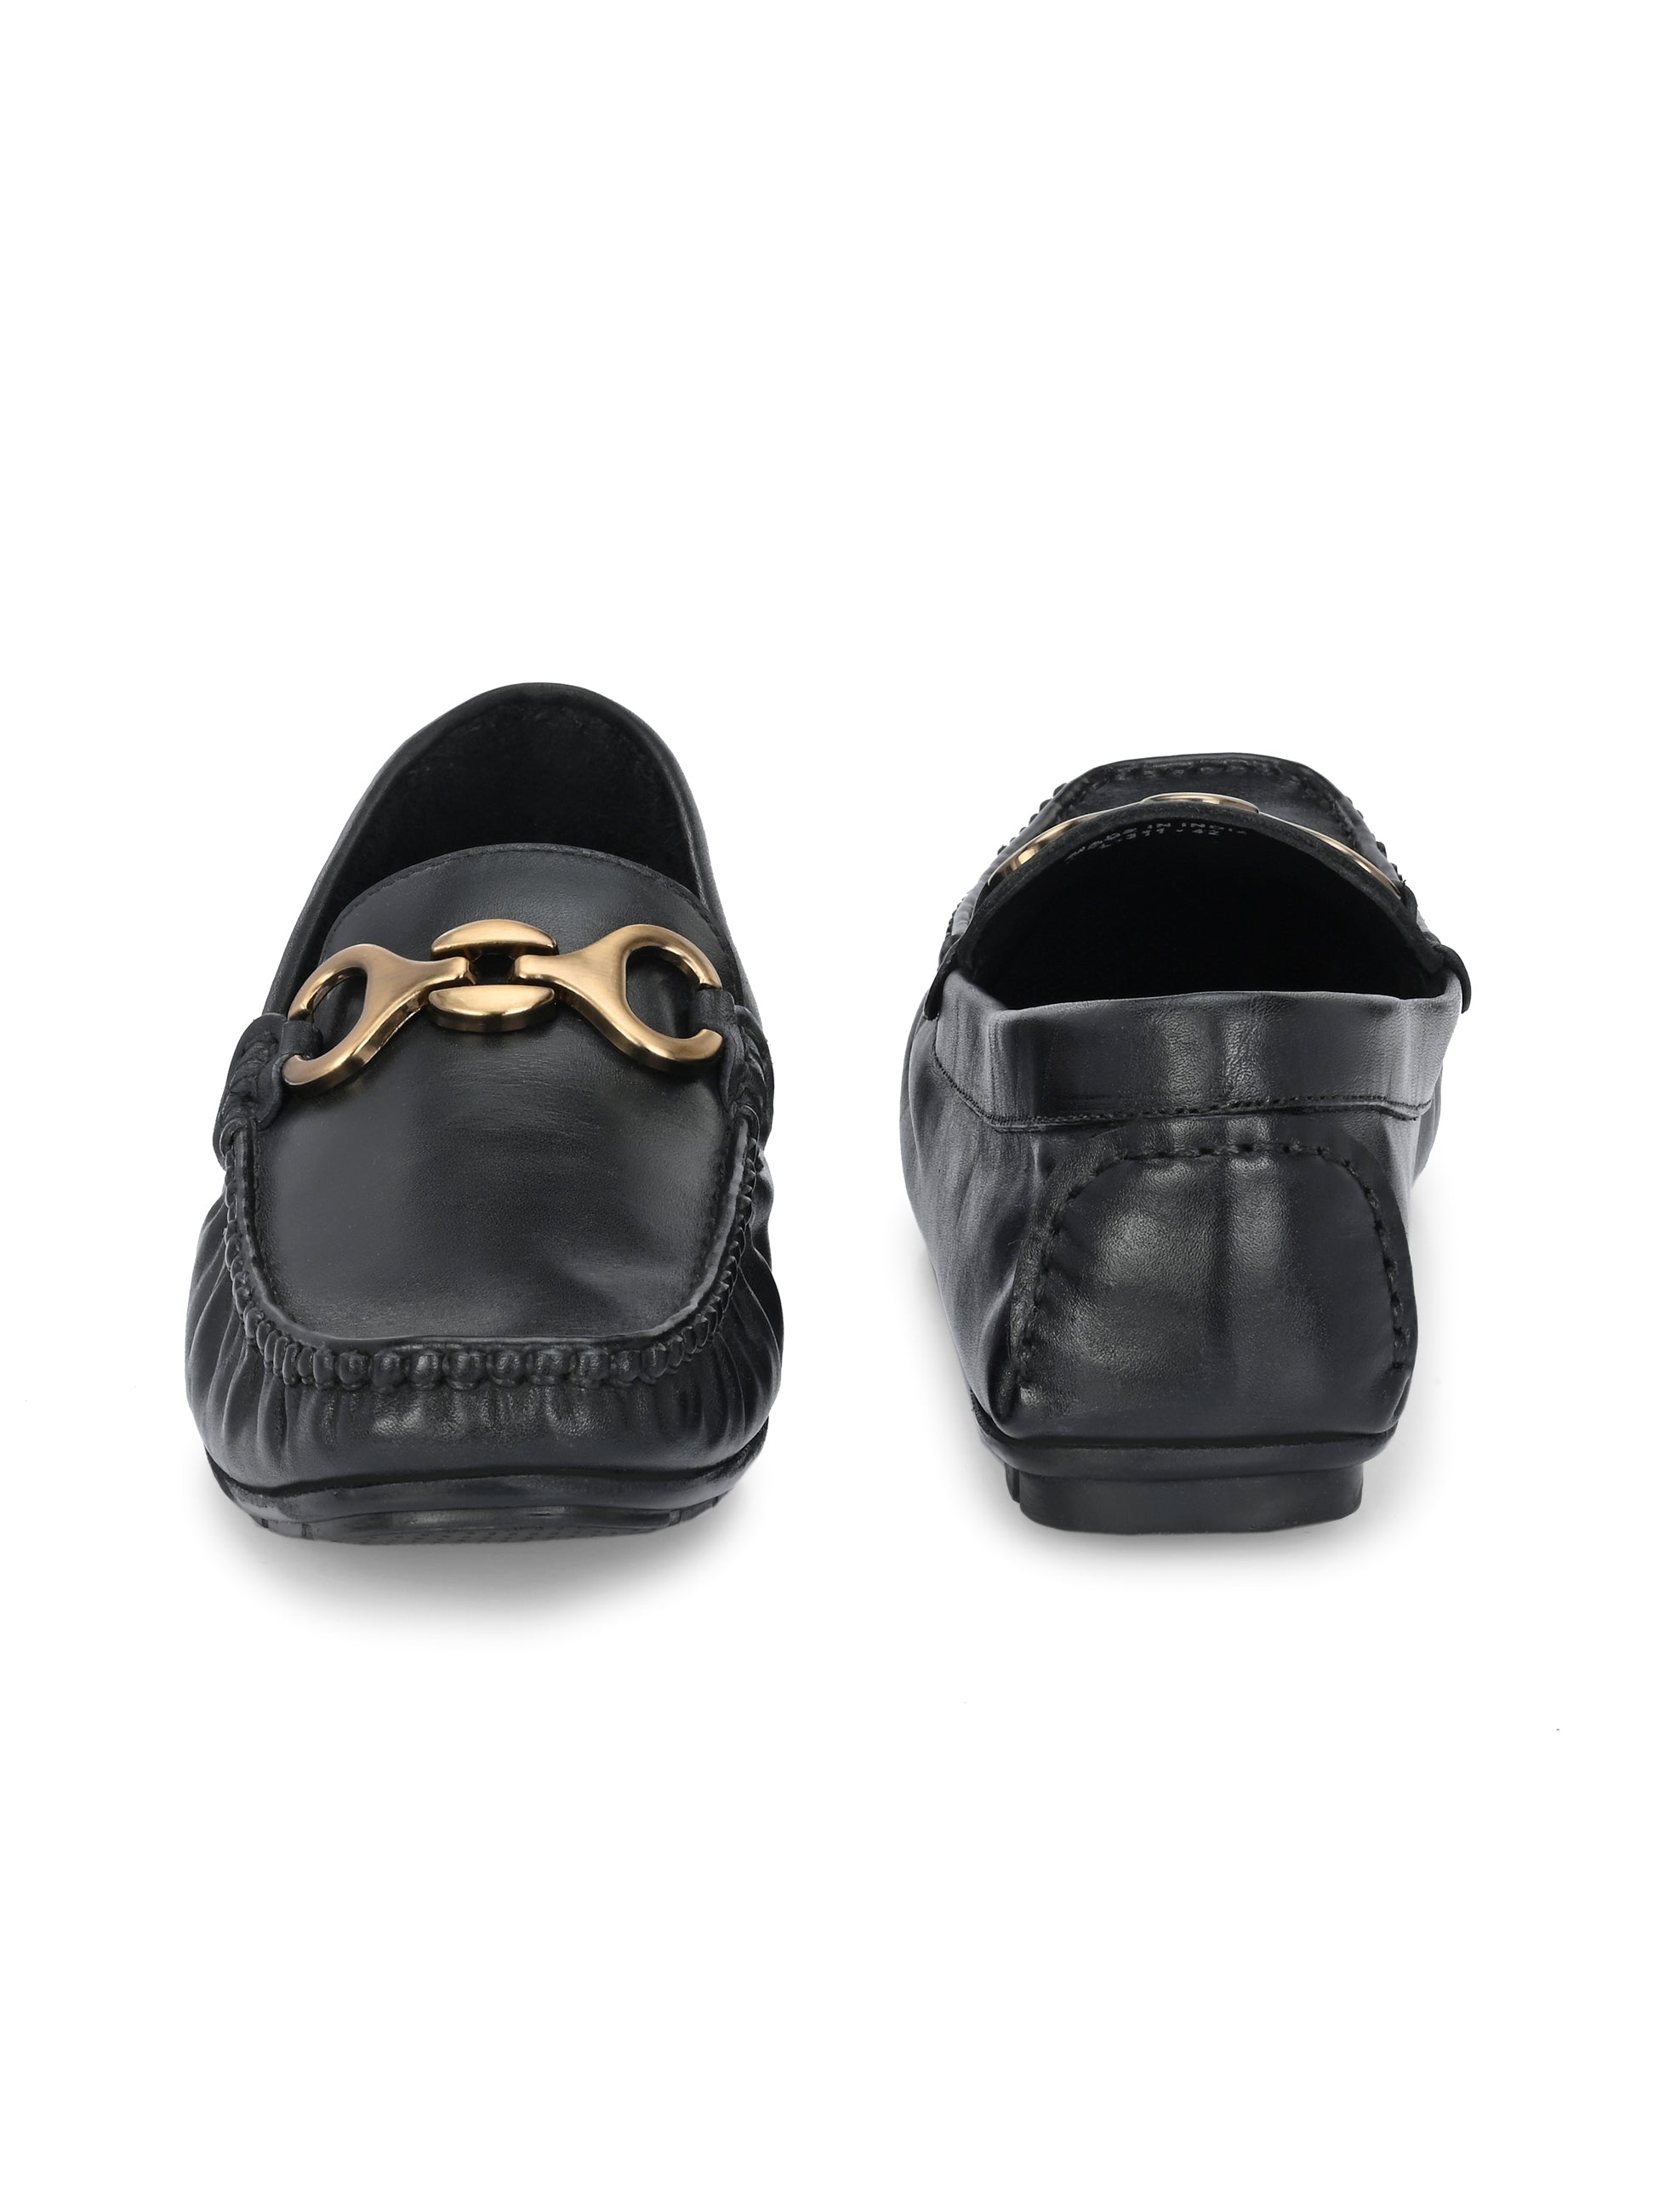 Egoss Leather Socks Loafers For Men